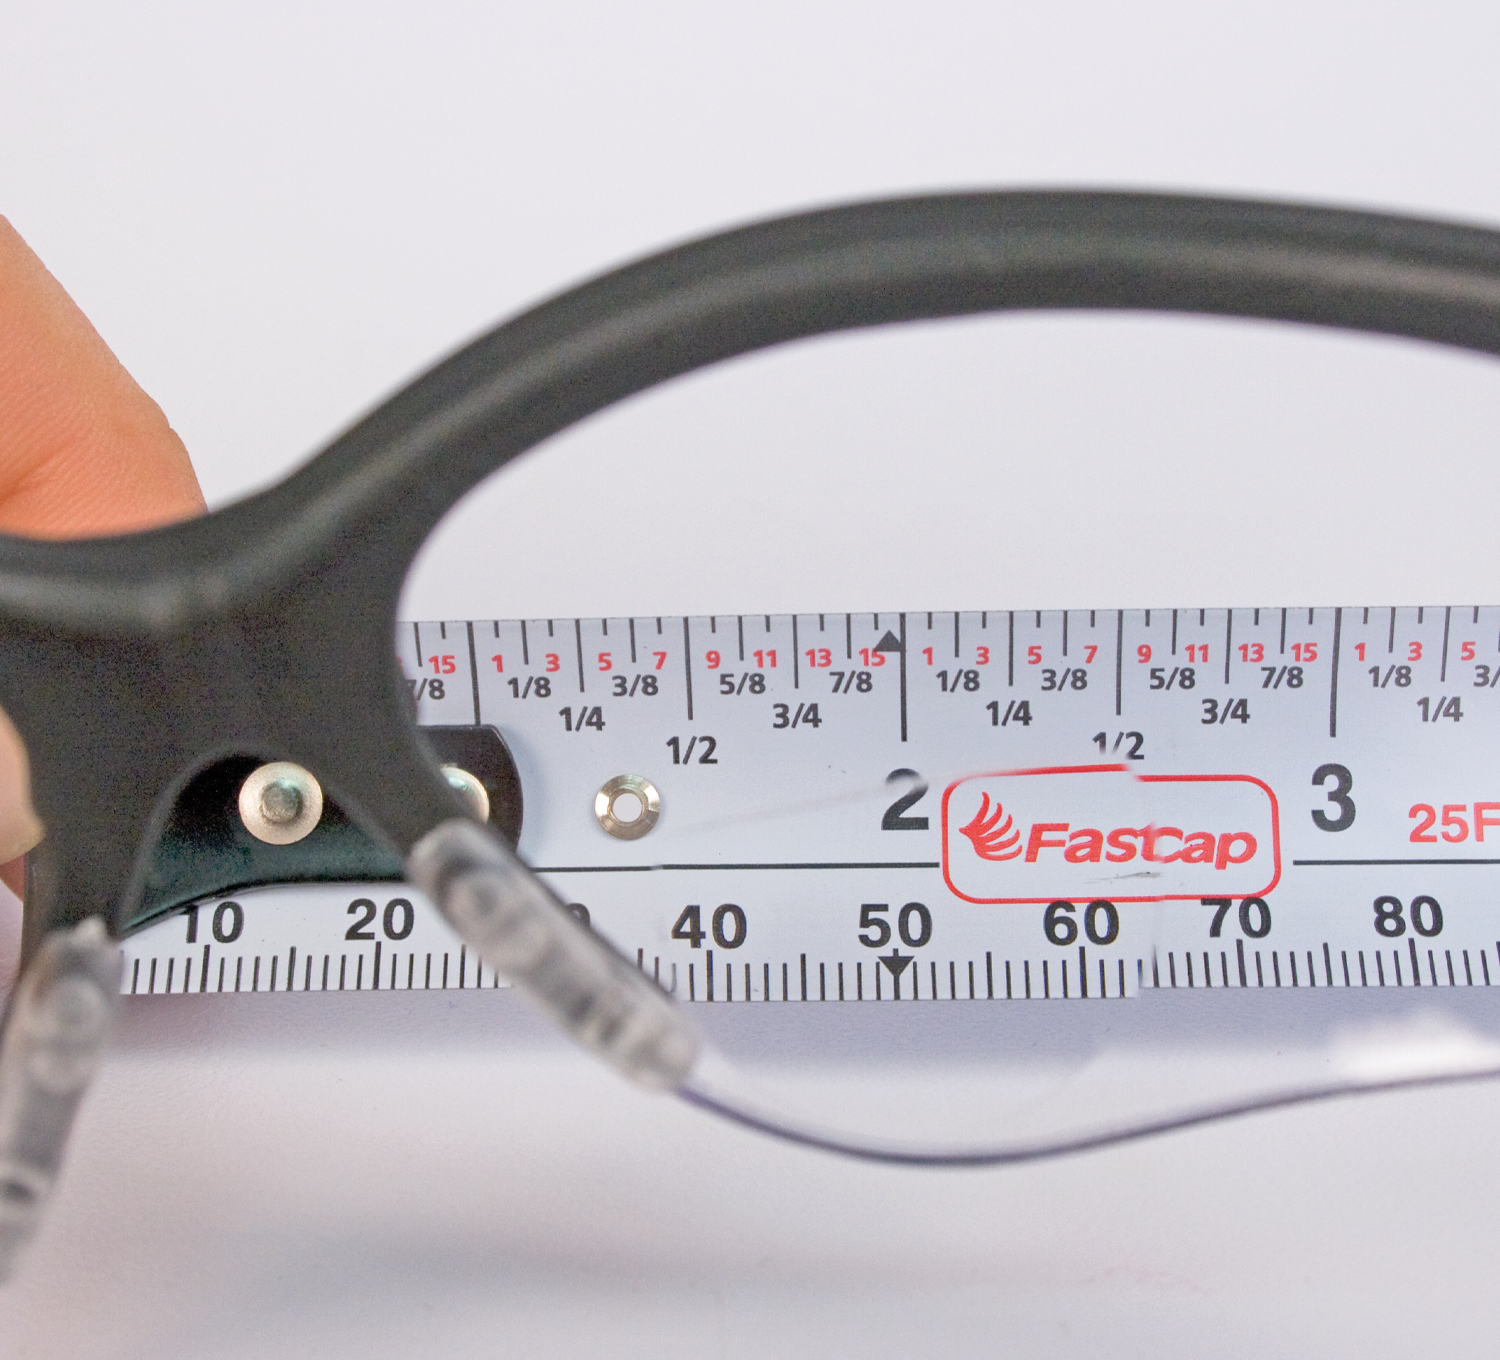 Workshop Safety Fastcap Bifocal Cat Eyes Safety Glasses Anti-Fog +1.5 Diopter 